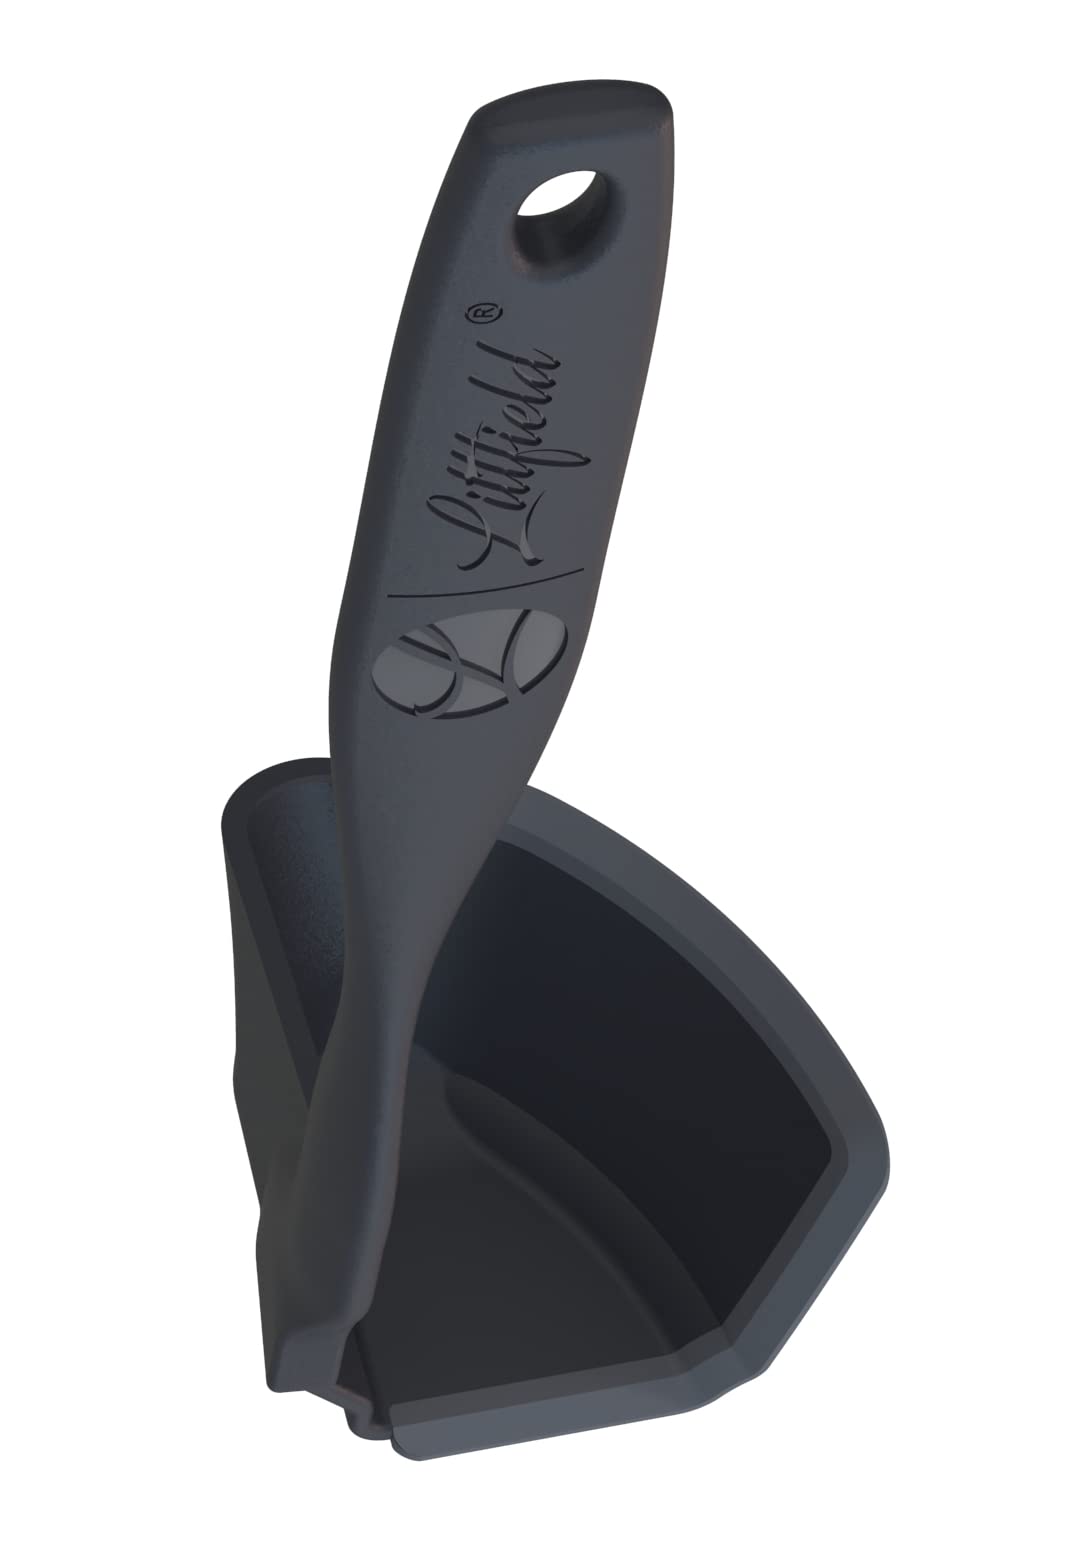 Littfield Drehkellenspatel Black Edition - Thermomix Zubehör TM6 TM5 TM31